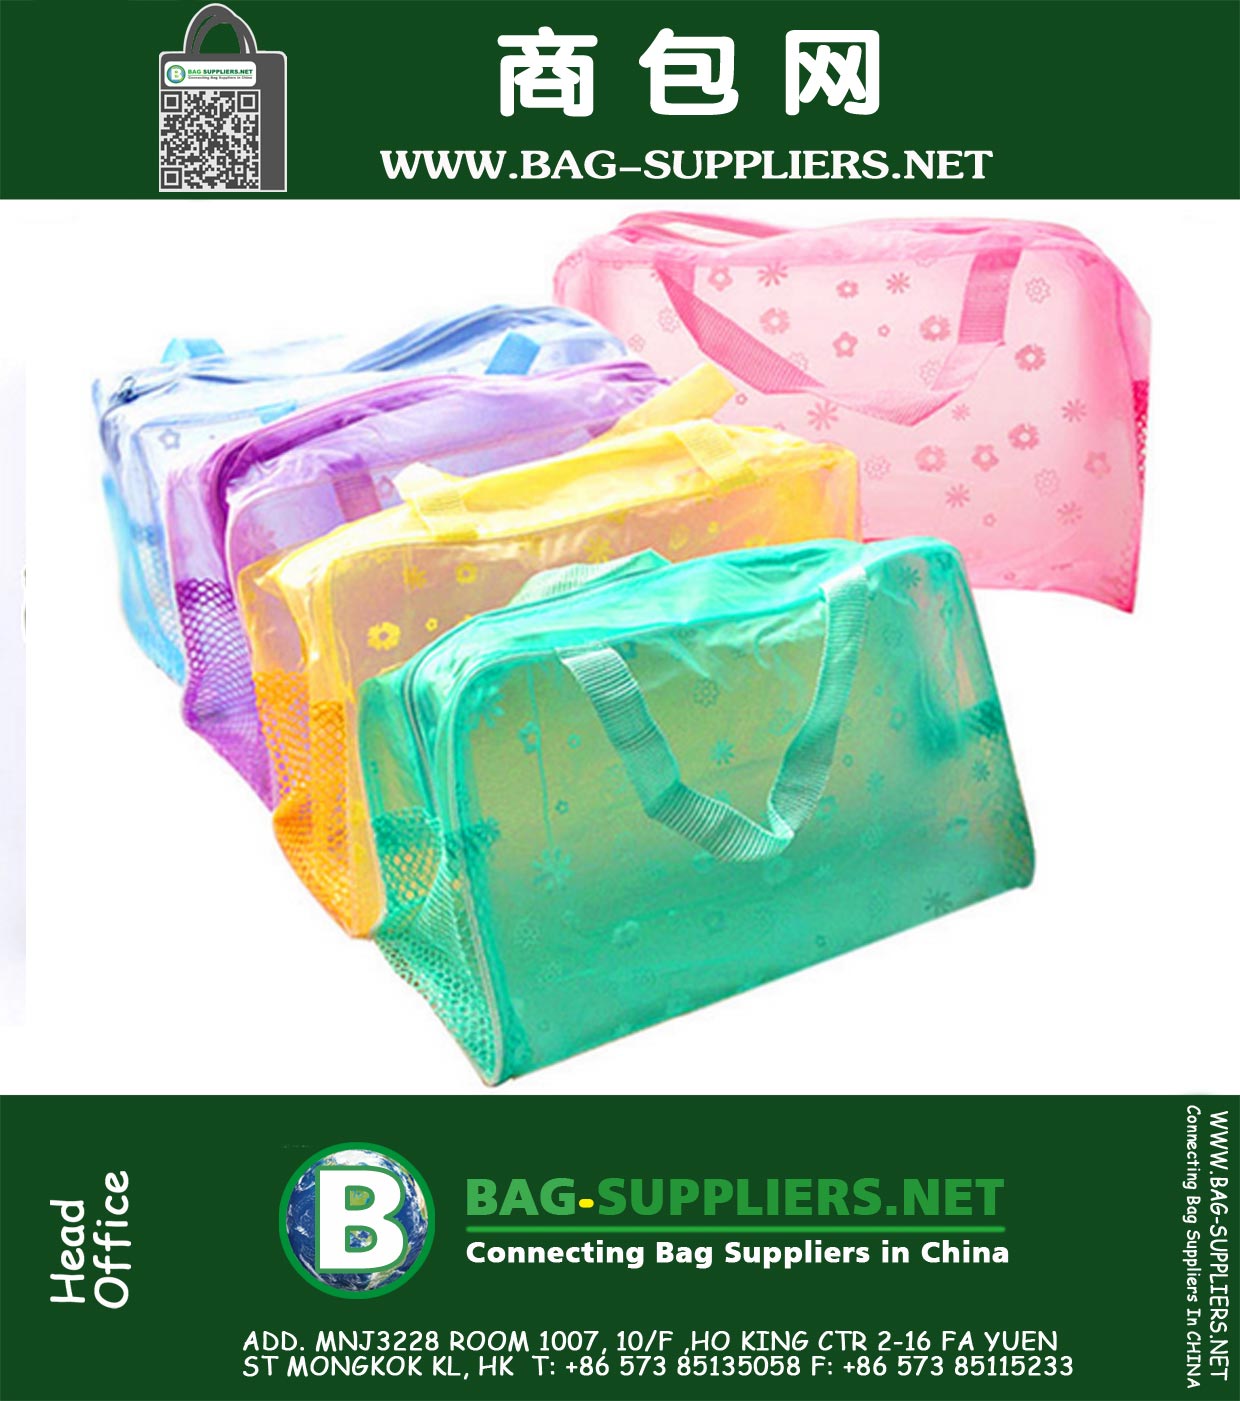 Wasserdichtes PVC-freie Aufbewahrungsbehälter-Make-up-Tasche für Kosmetik und Badprodukte Housekeeping Organisation Aufbewahrungstasche